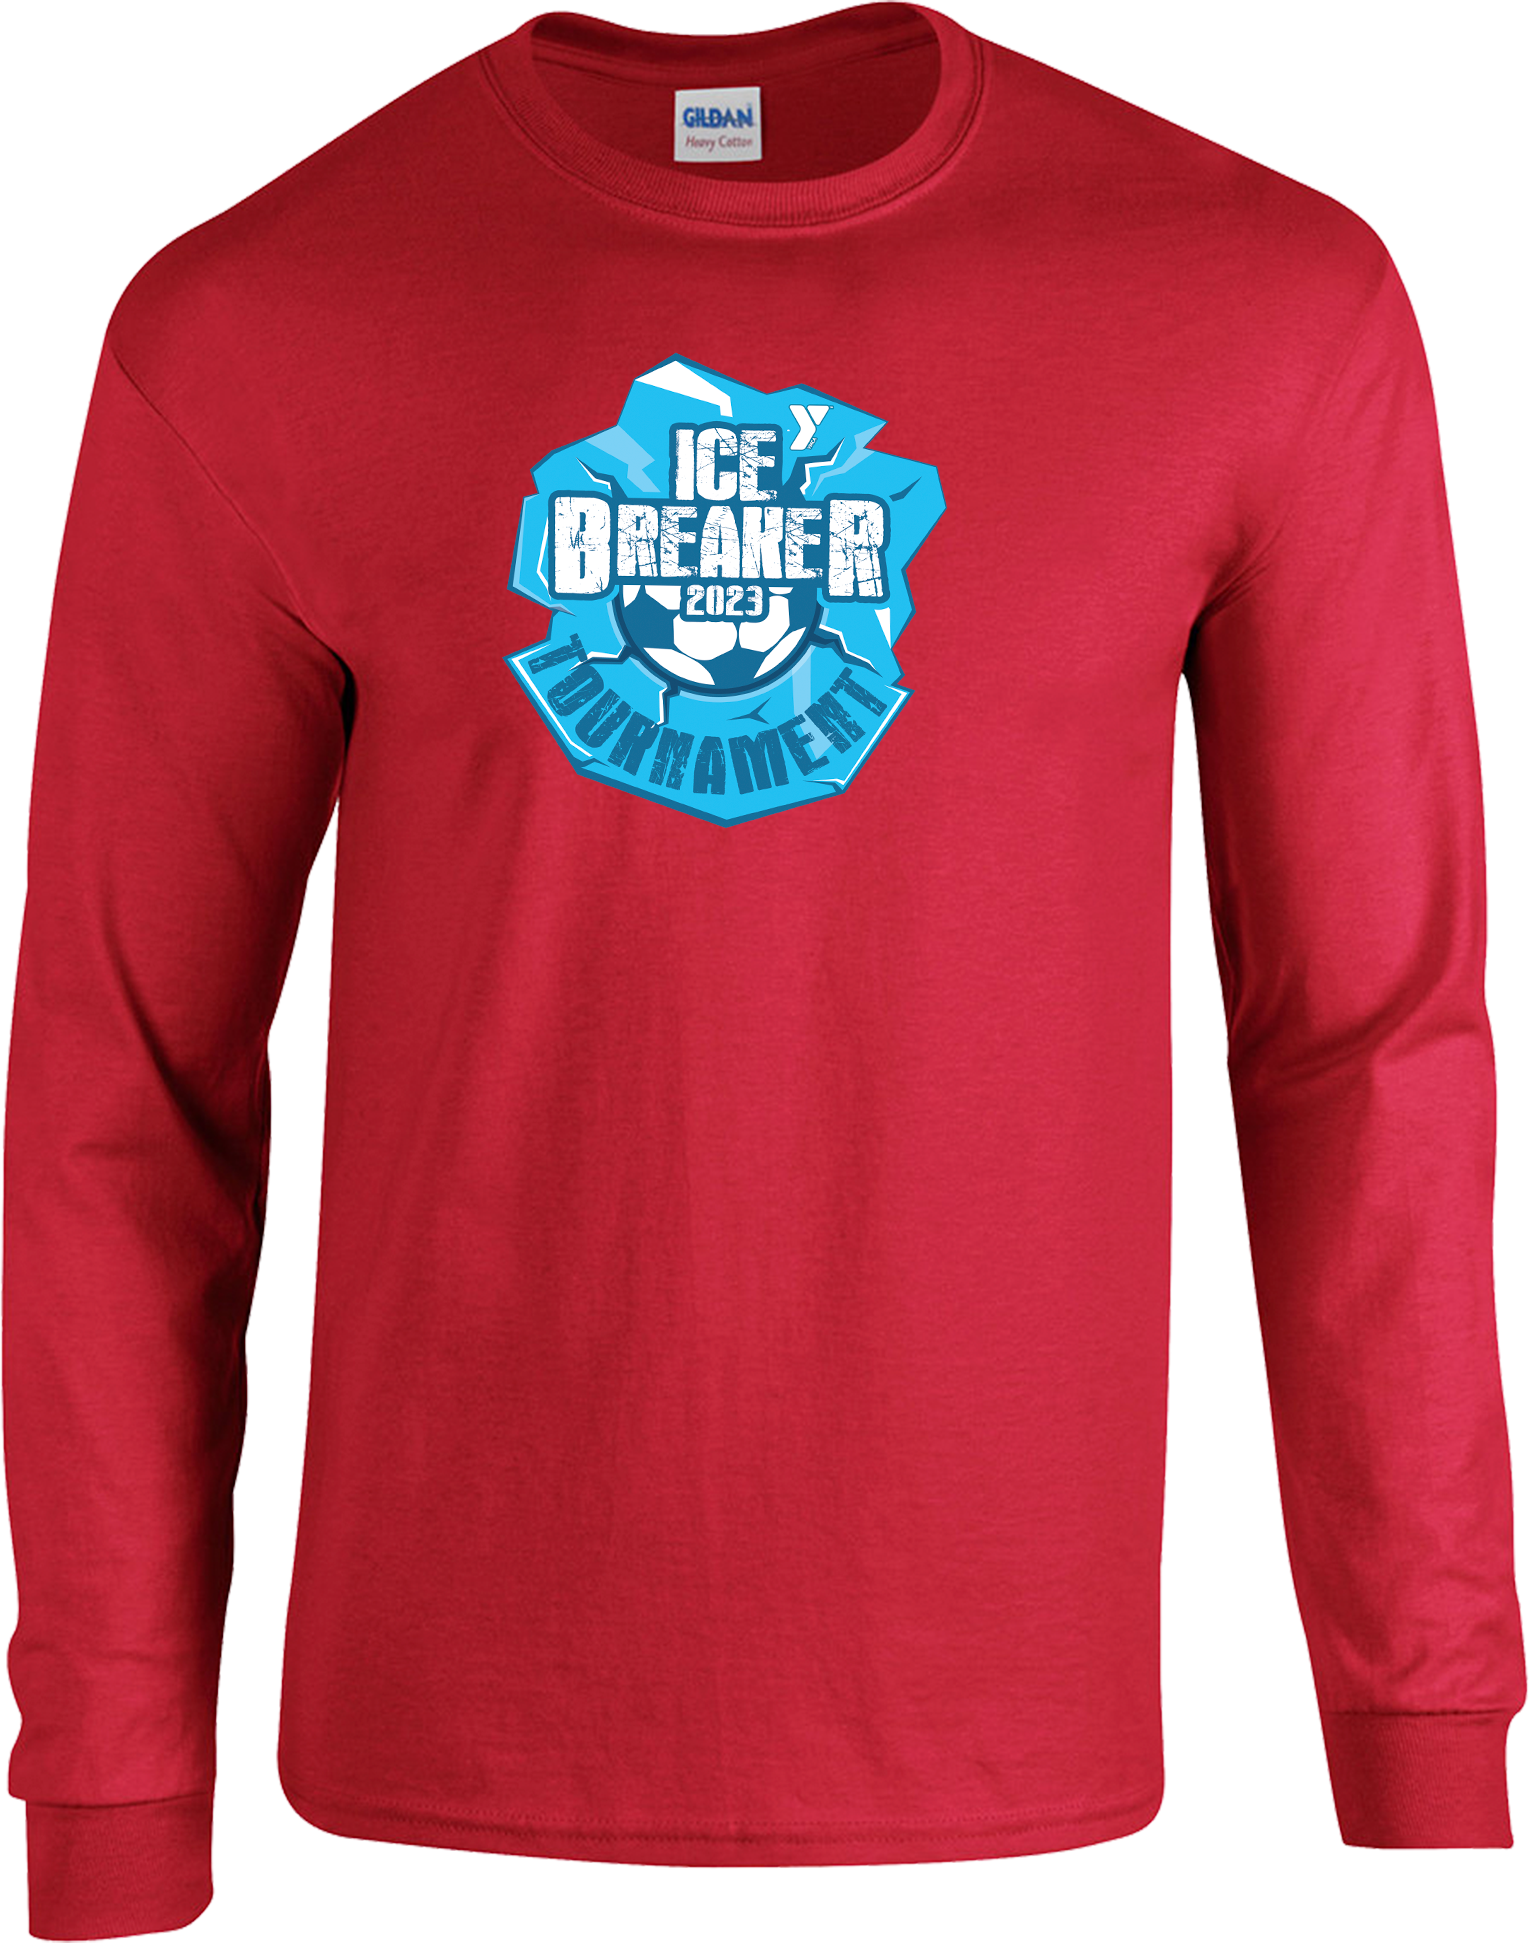 LONG SLEEVES - 2023 Ice Breaker Tournament